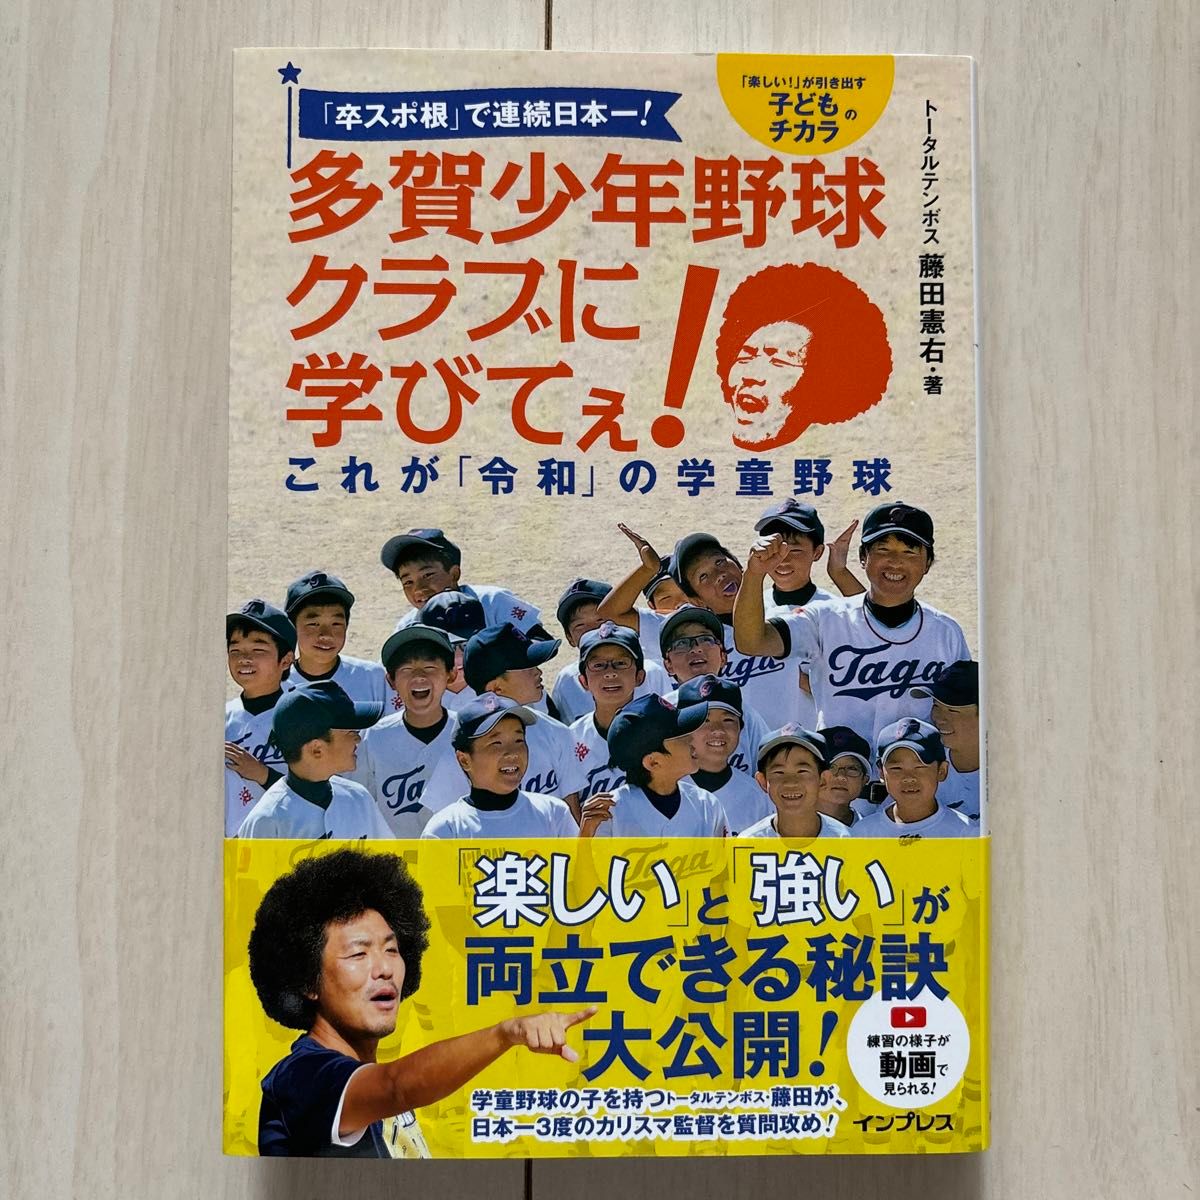 「卒スポ根」 で連続日本一! 多賀少年野球クラブに学びてぇ! これが 「令和」 の学童野球